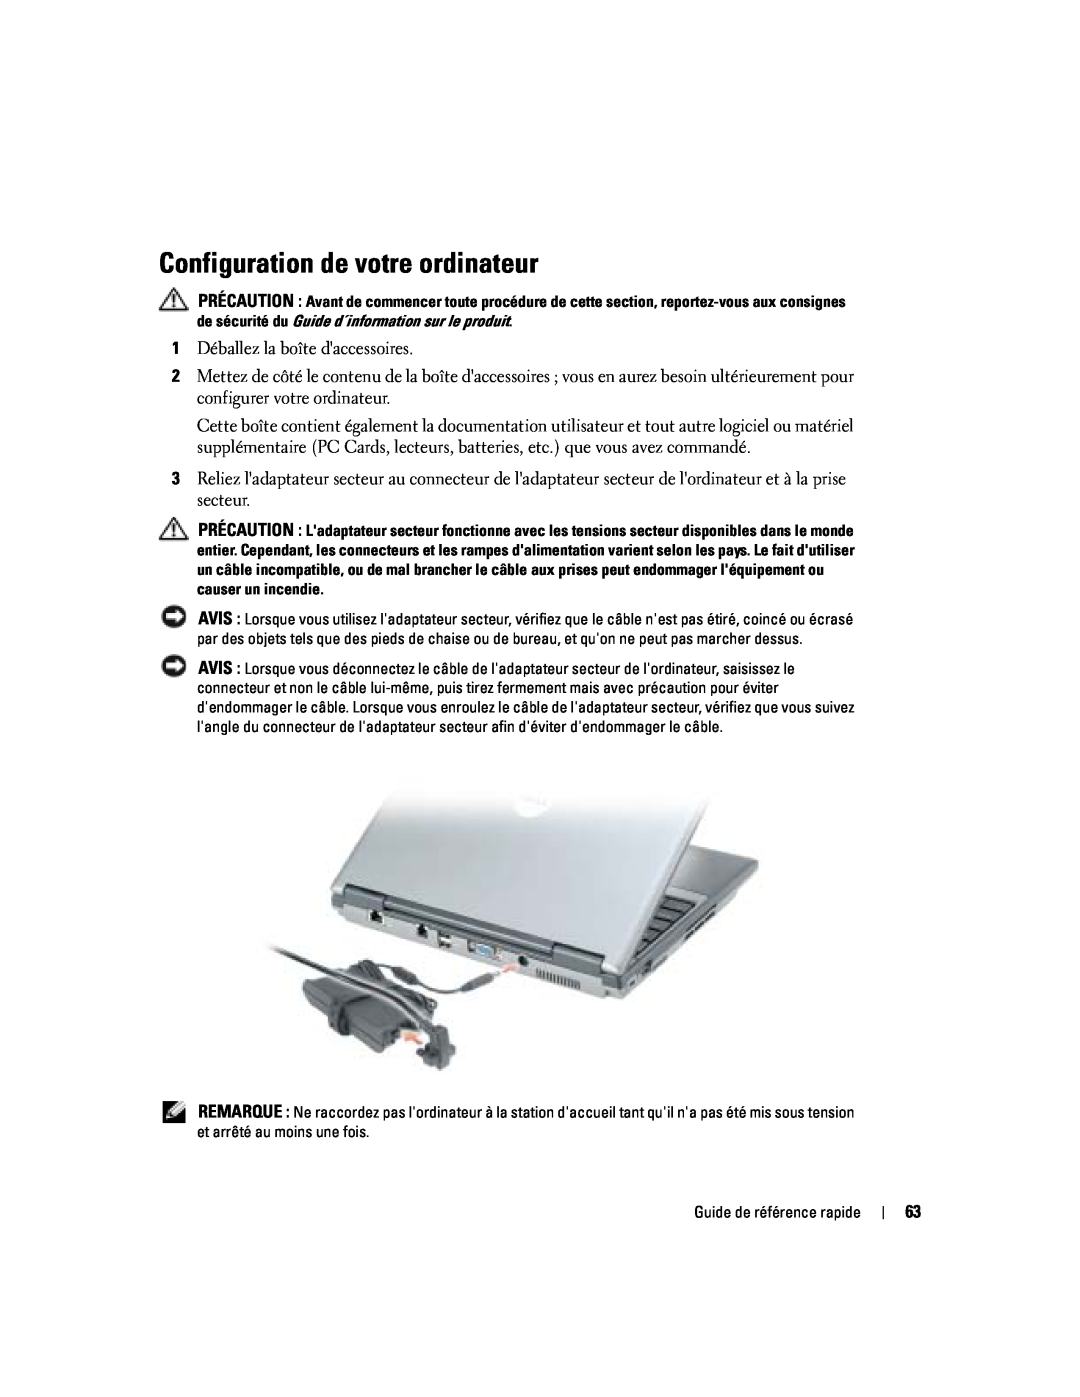 Dell PP06S manual Configuration de votre ordinateur 